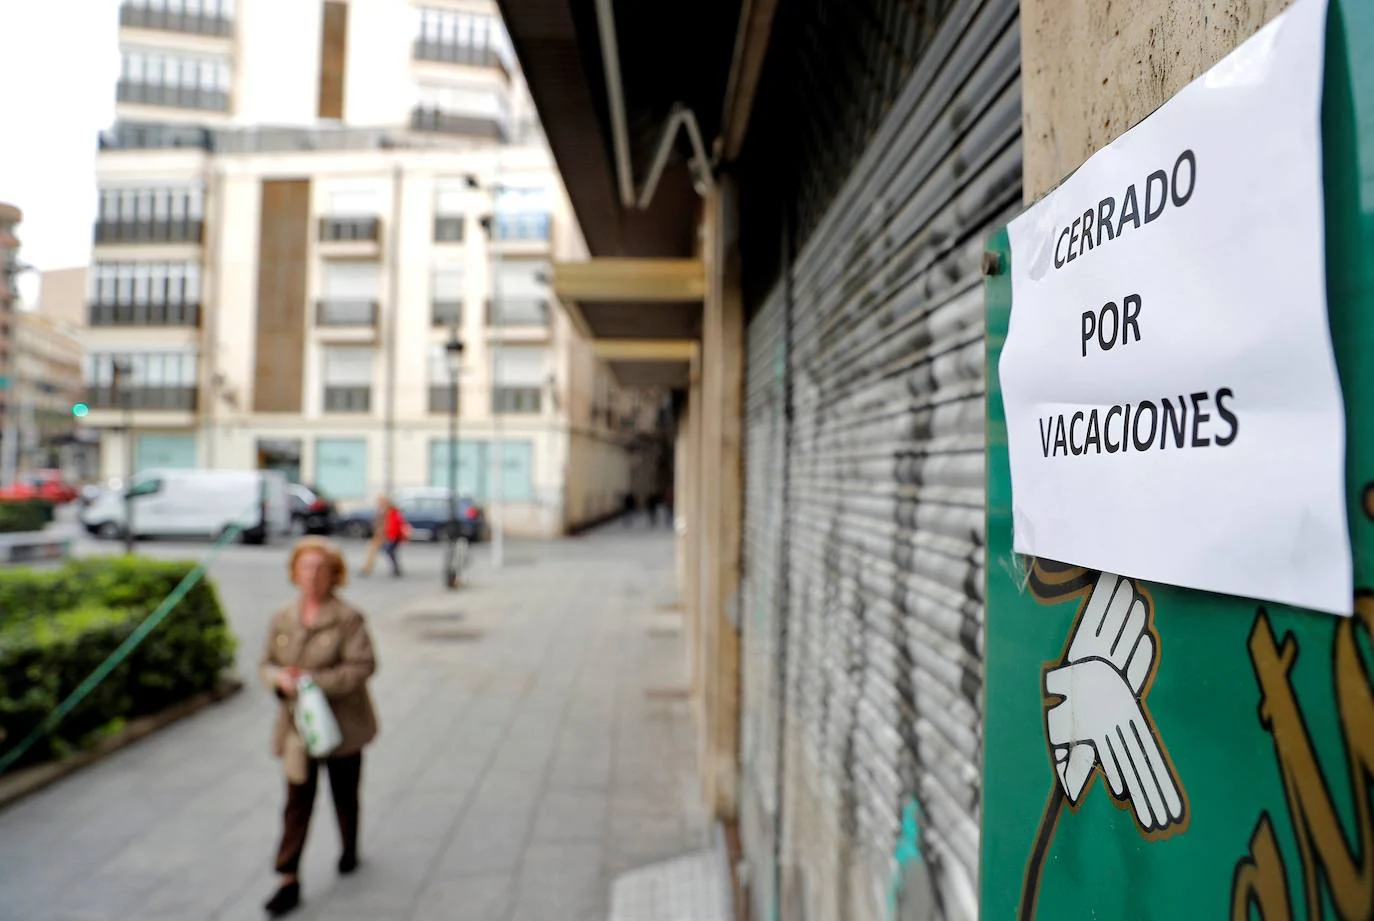 Un bar regentado por ciudadanos chinos, en el barrio de El Carmen de Valéncia, muestra un cartel de "Cerrado por vacaciones" para justificar el cierre causado por el miedo al coronavirus.